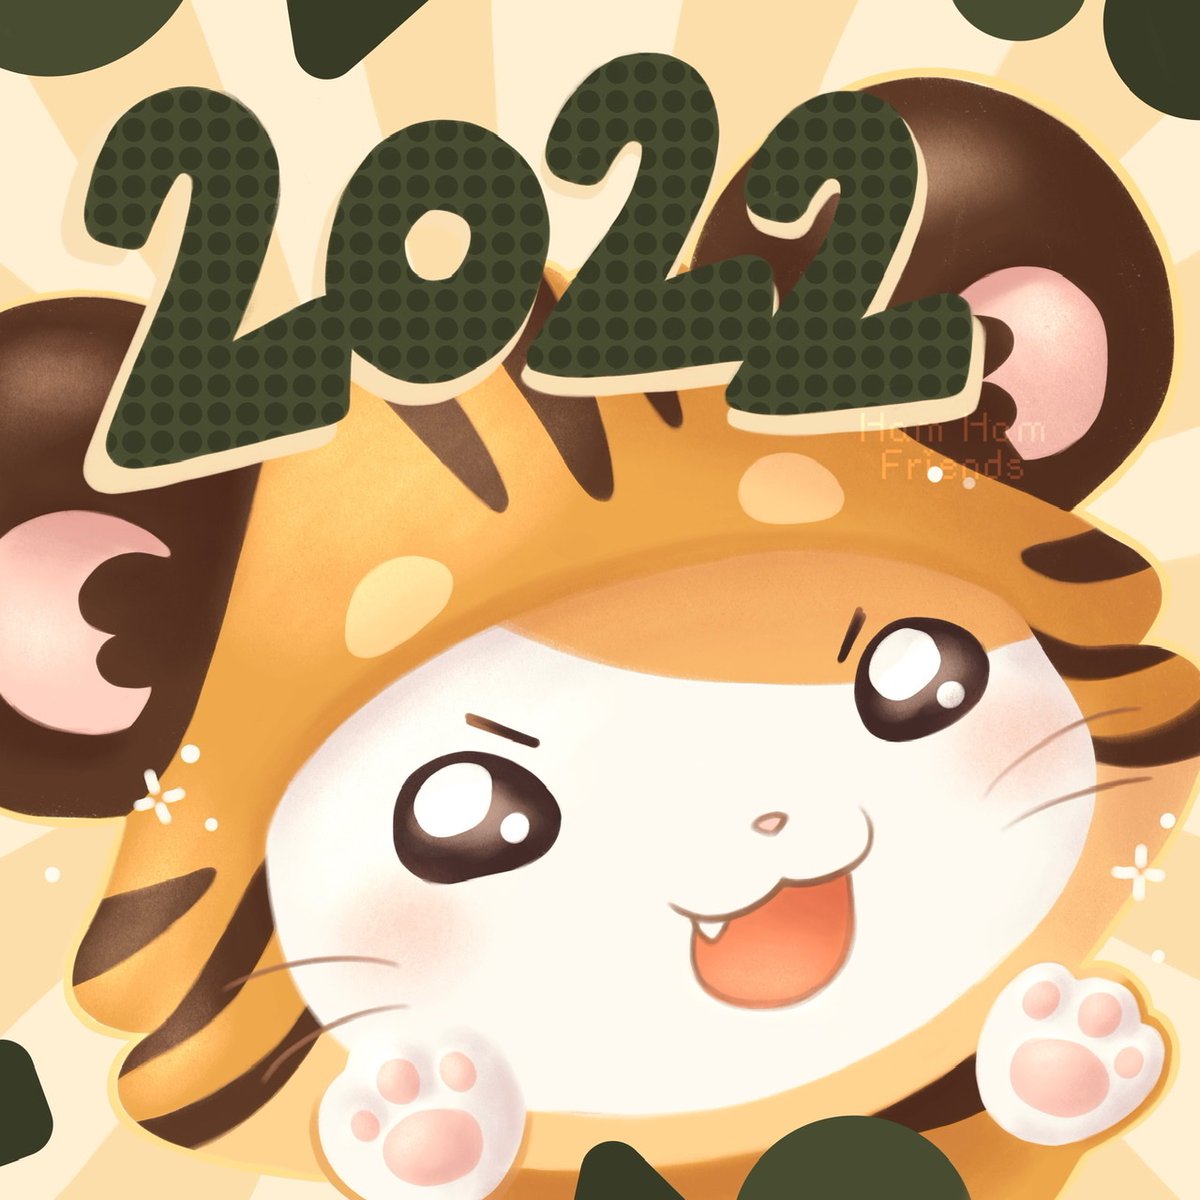 Welcome 2022! 🧡🎉

#hamtaro #hamtarofanart #procreateart #welcome2022